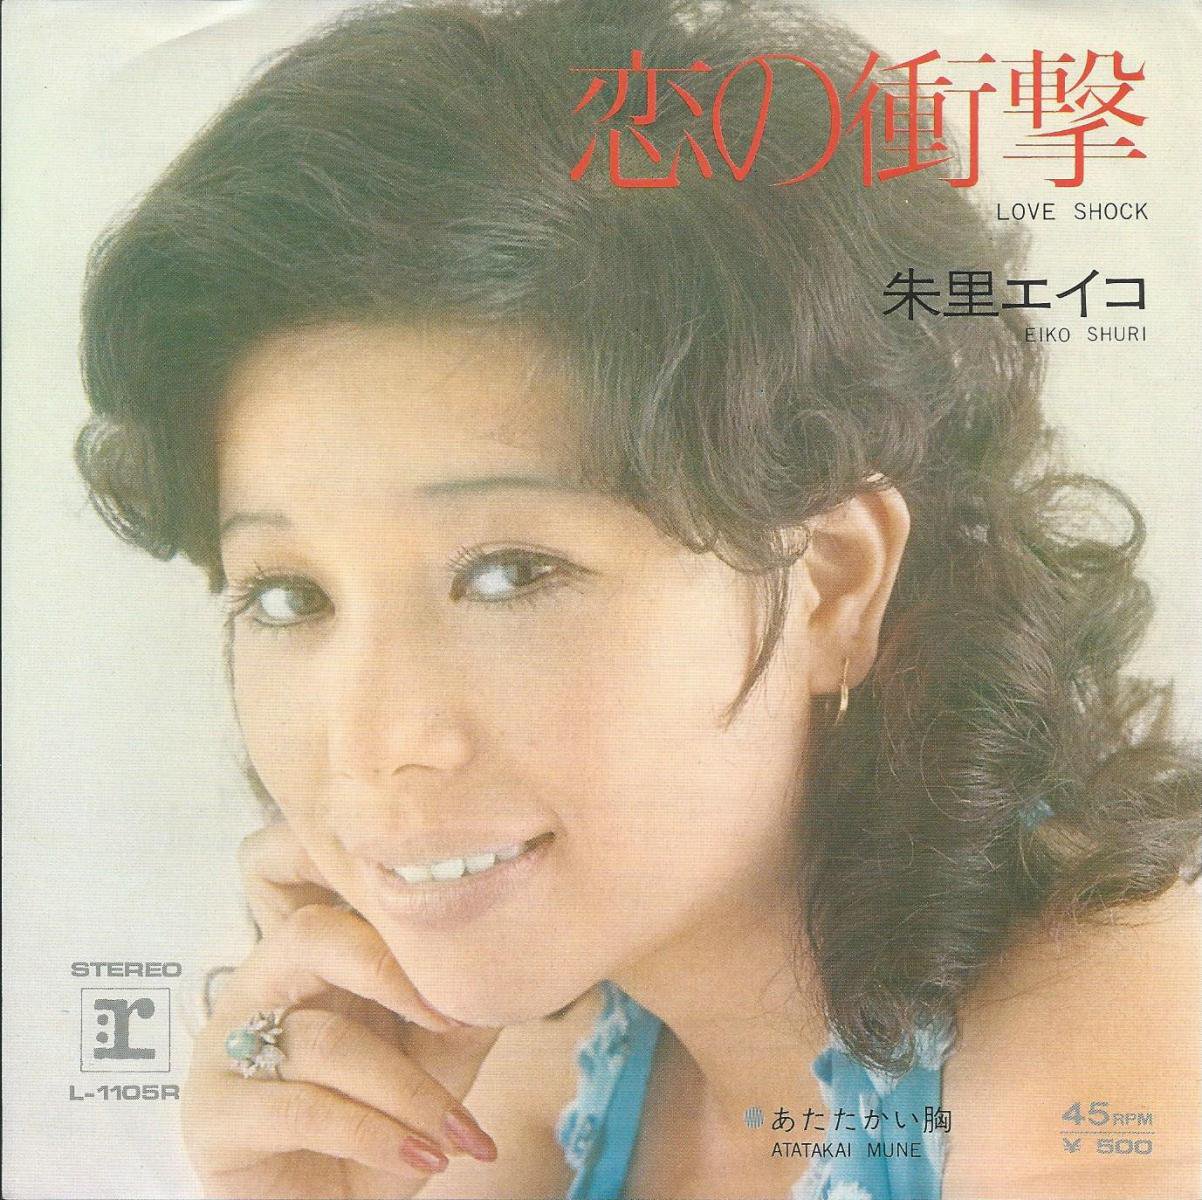 朱里エイコ EIKO SHURI / 恋の衝撃 LOVE SHOCK / あたたかい胸 (7) - HIP TANK RECORDS